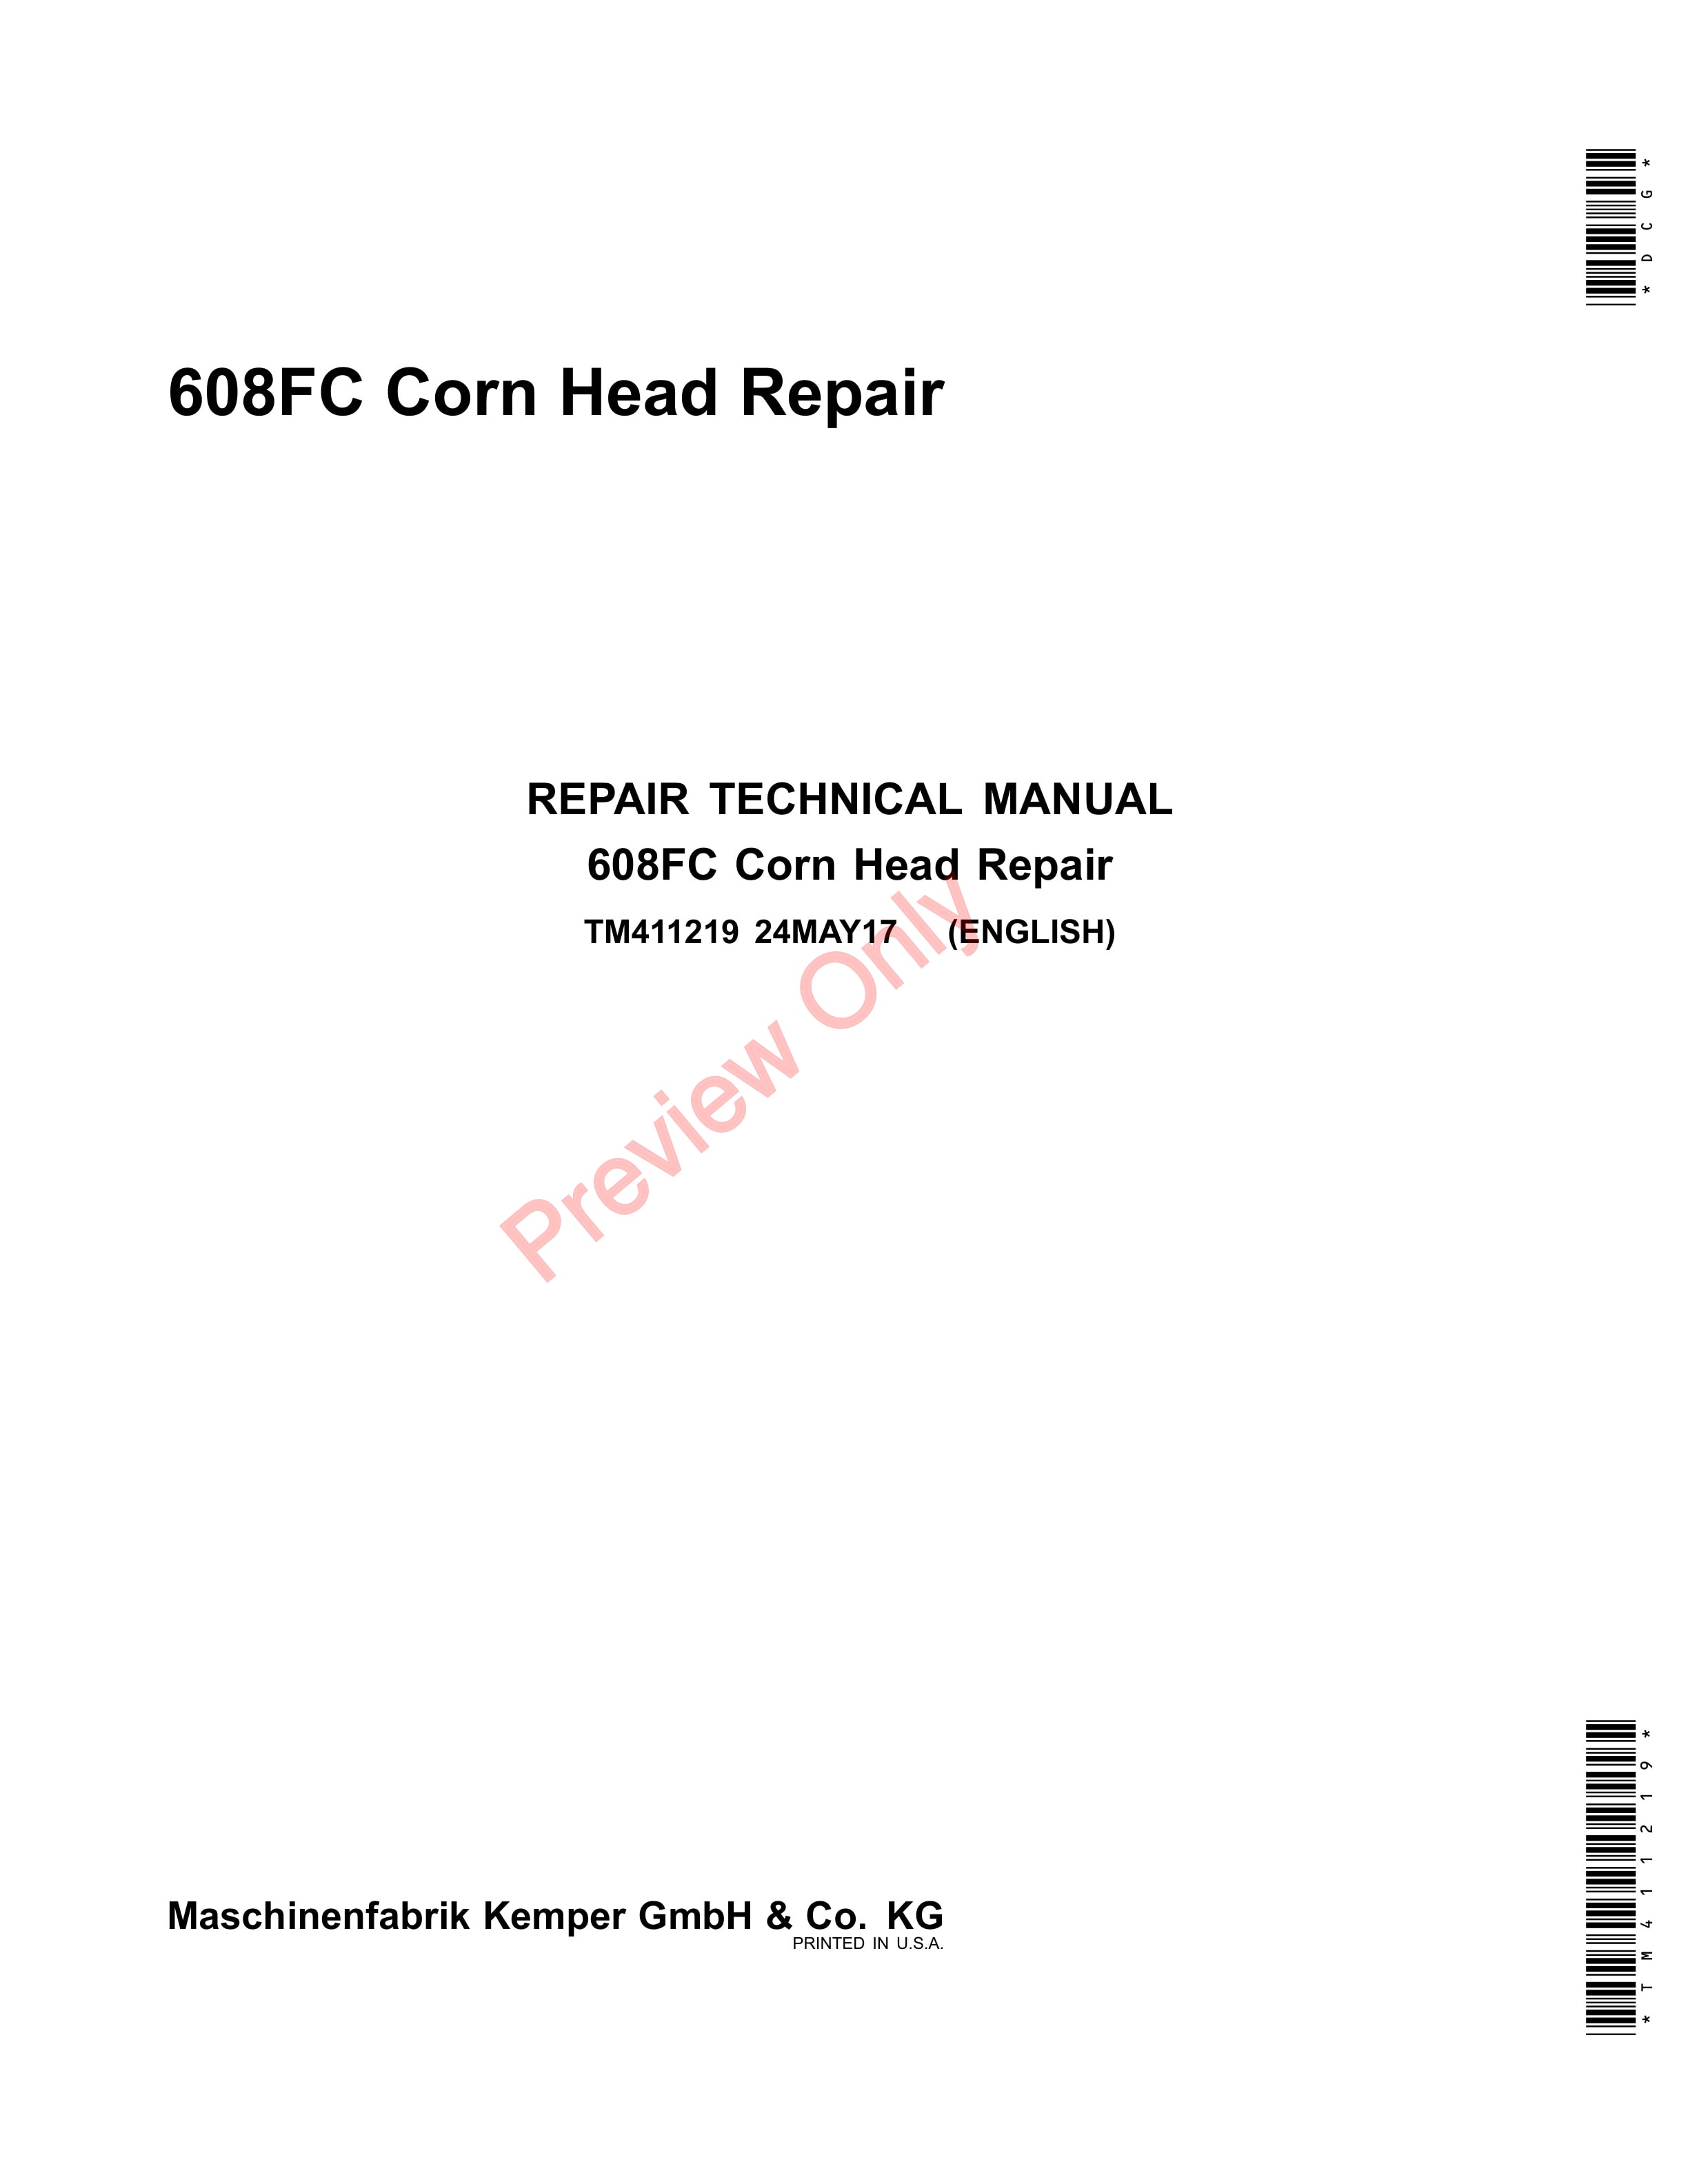 John Deere 608FC Corn Head Technical Manual TM411219 24MAY17 1